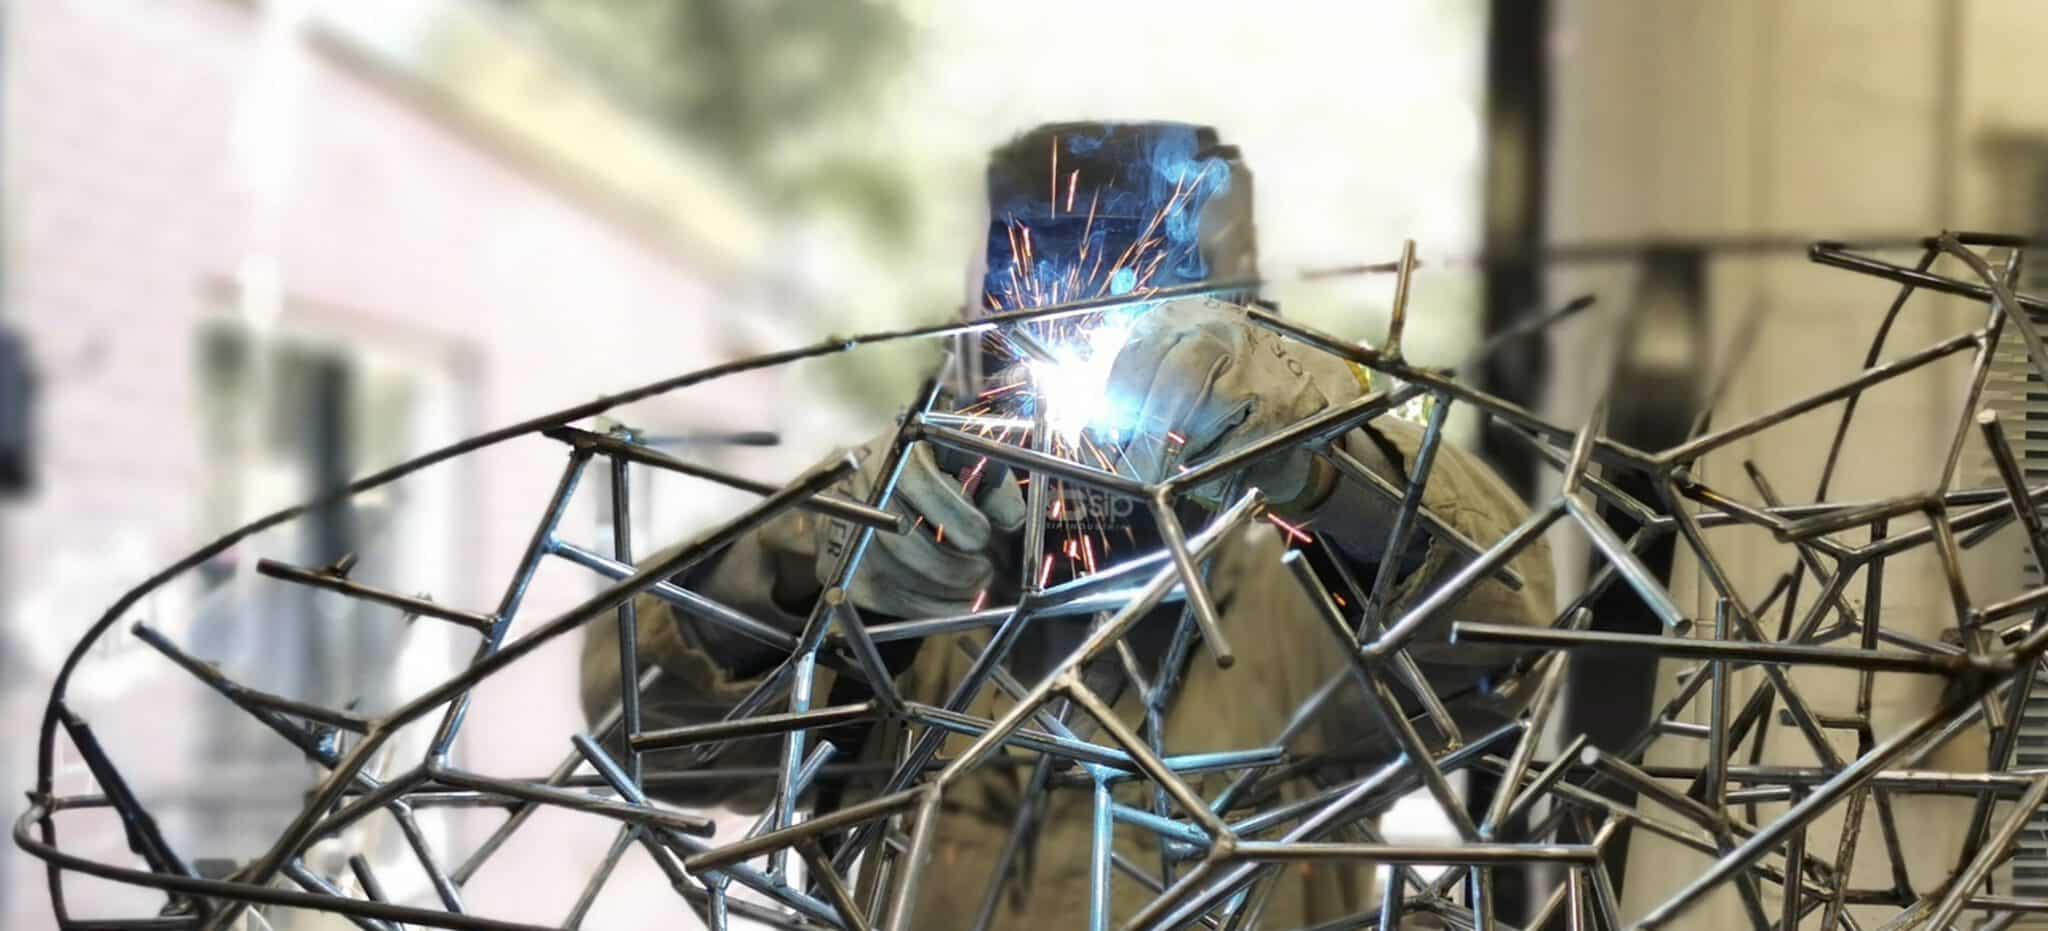 annet van egmond welding sculpture artwork art space bussum female artist